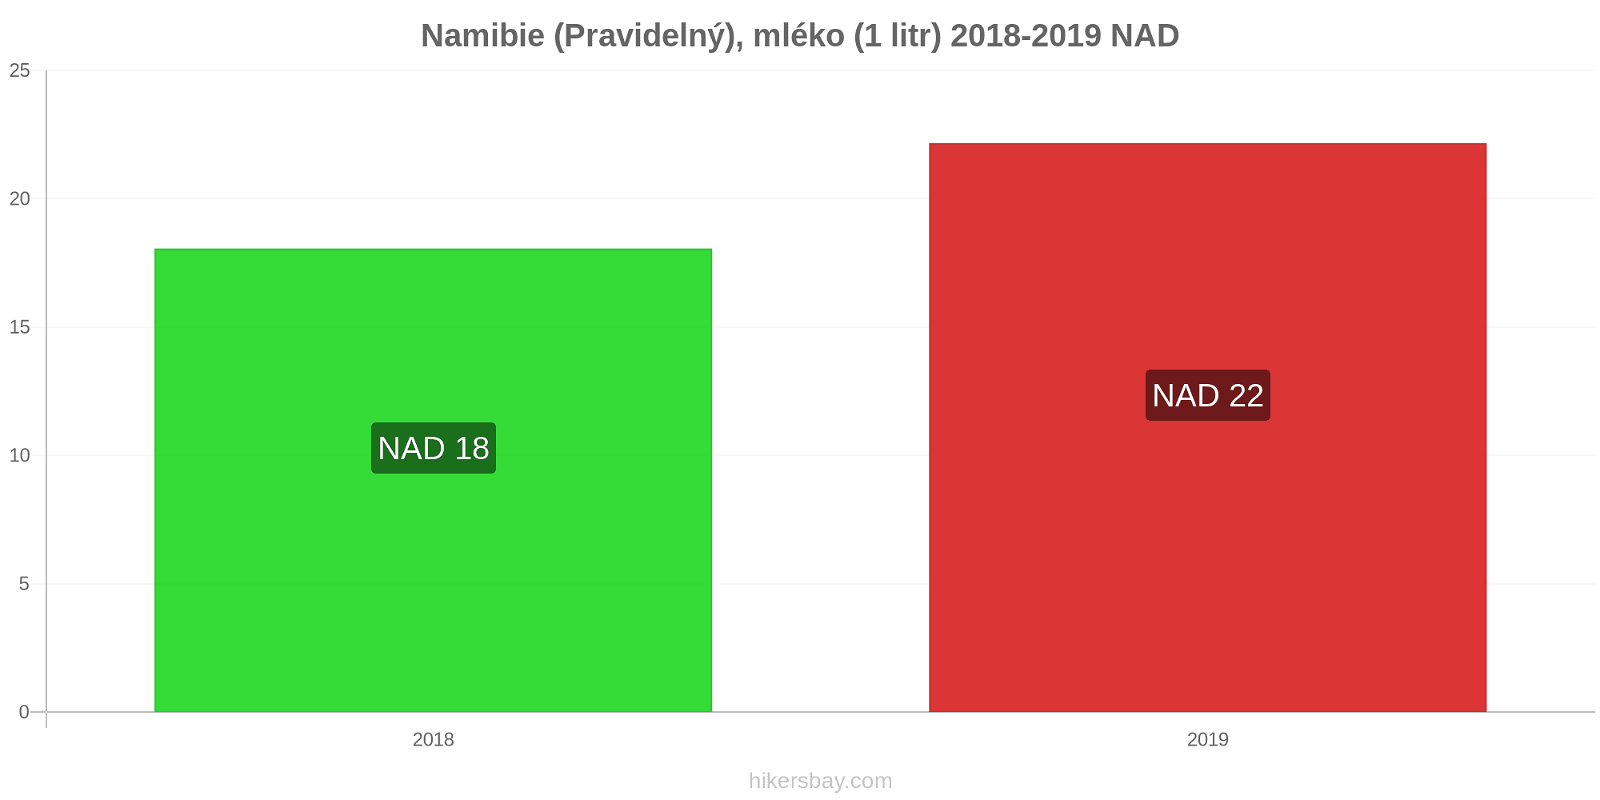 Namibie změny cen (Pravidelný), mléko (1 litr) hikersbay.com